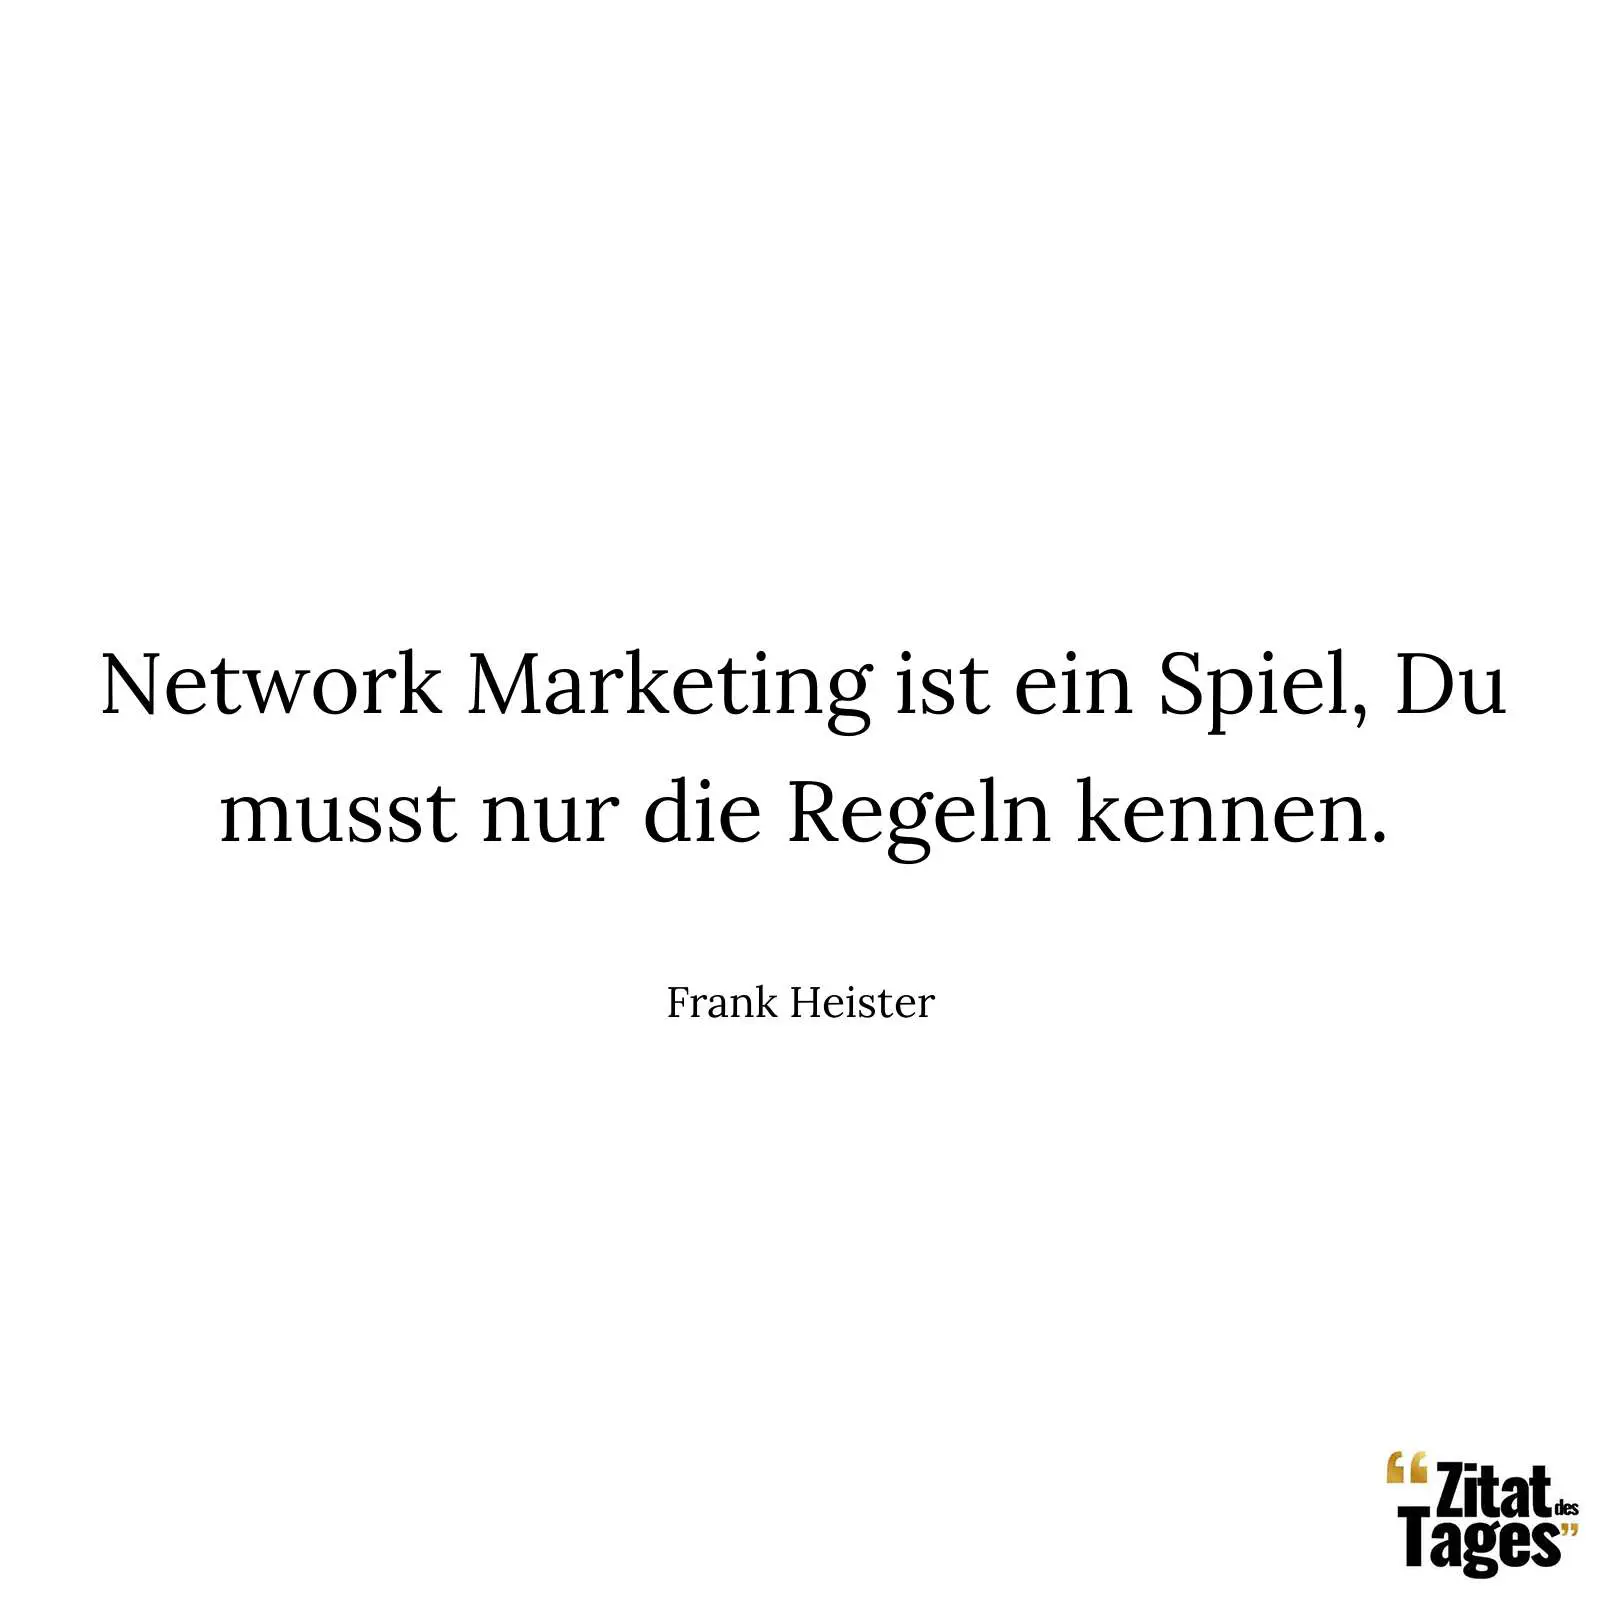 Network Marketing ist ein Spiel, Du musst nur die Regeln kennen. - Frank Heister